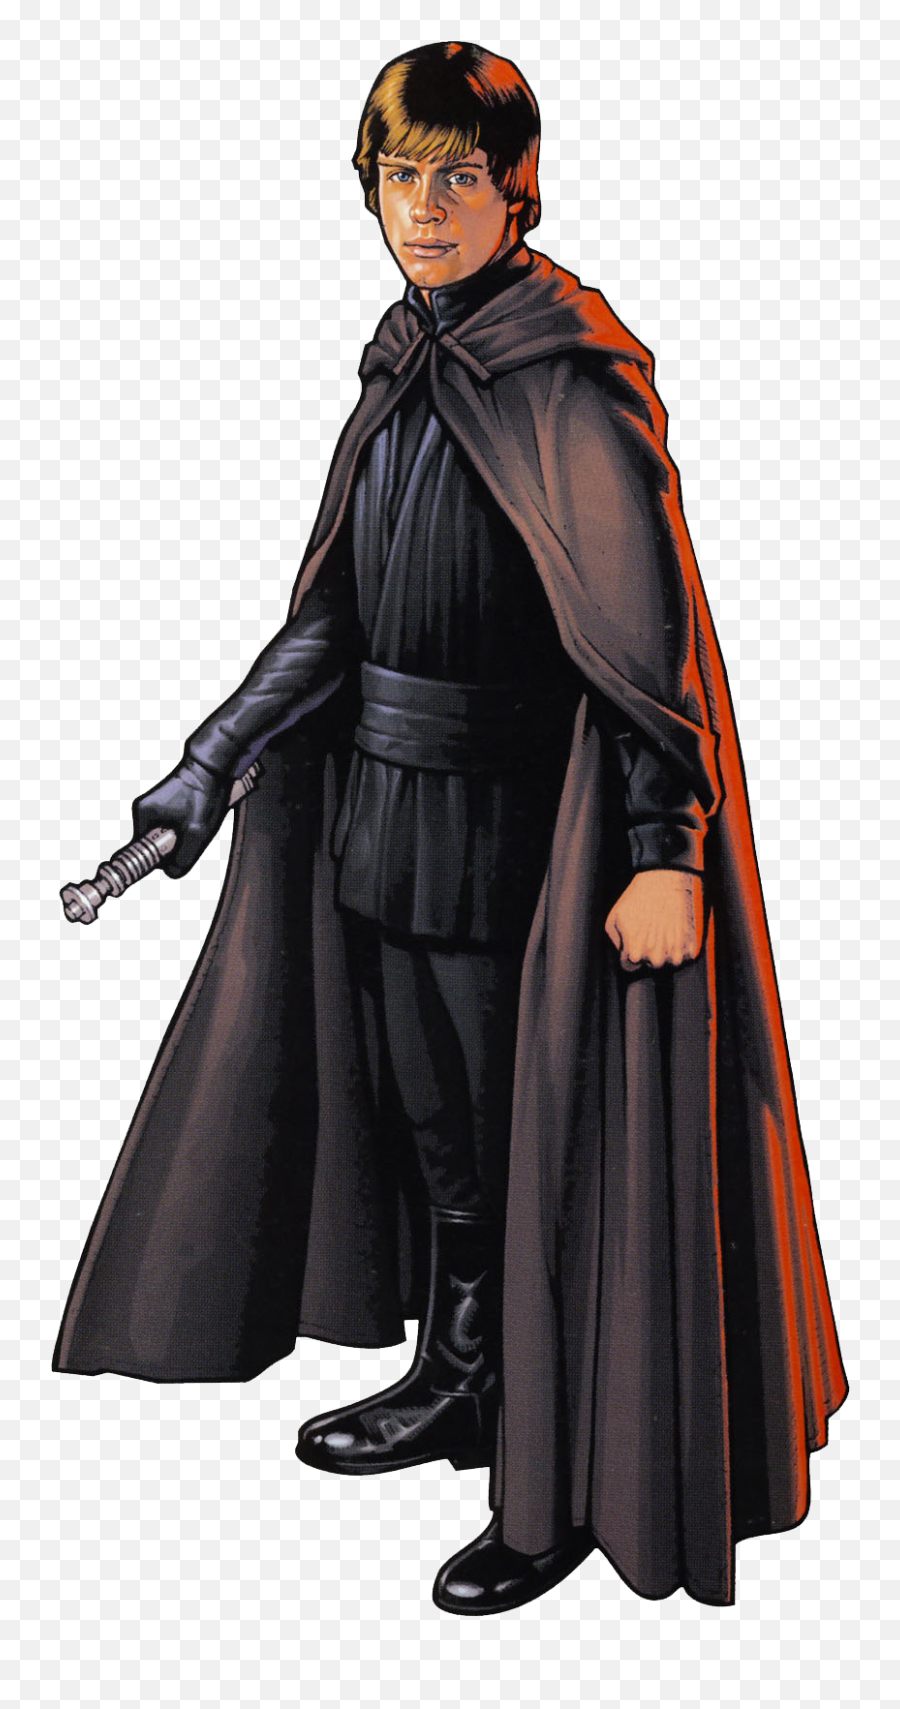 Luke Skywalker Png Picture - Luke Skywalker Jedi Master,Luke Skywalker Png